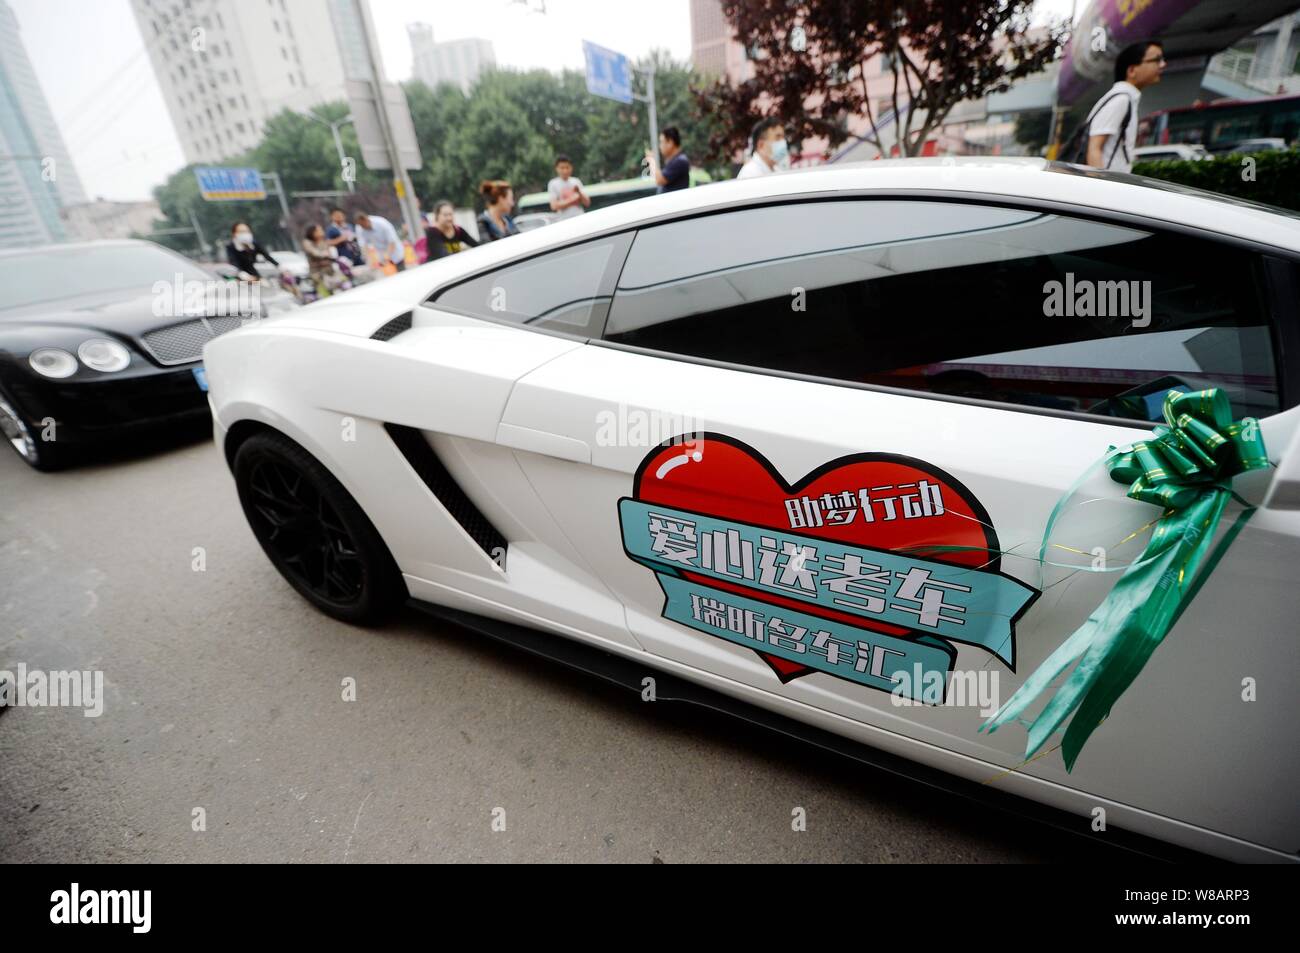 Lamborghini Gallardo y Bentley Flying Spur autos de lujo llegan a la Escuela Secundaria Experimental Shandong como parte de un desfile de automóviles de lujo voluntariamente a Foto de stock